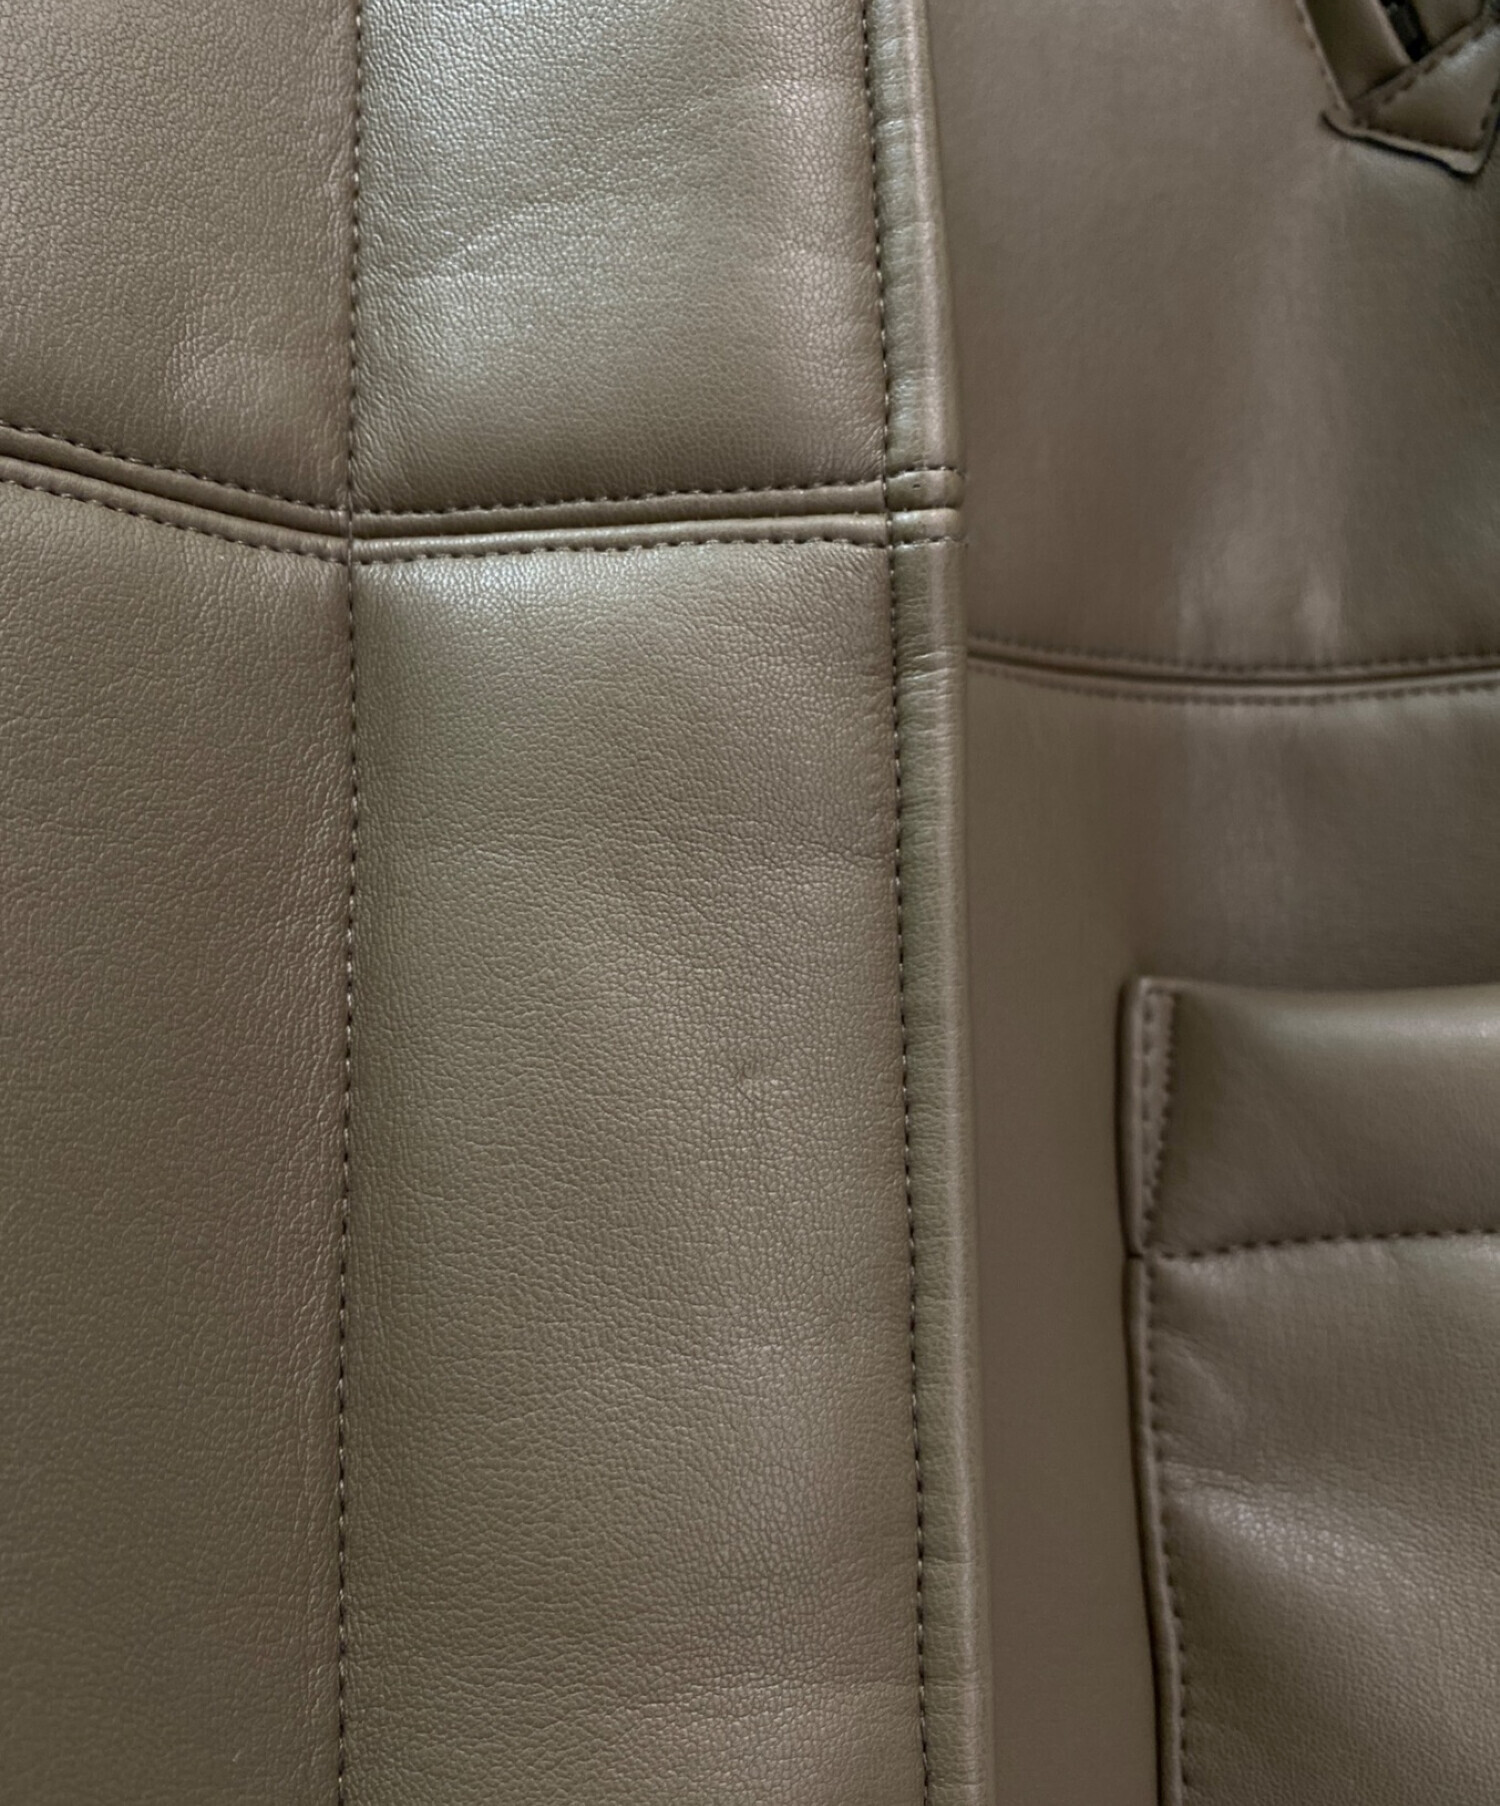 【超美品】Think Fur Eco Leather Raglan Jacket